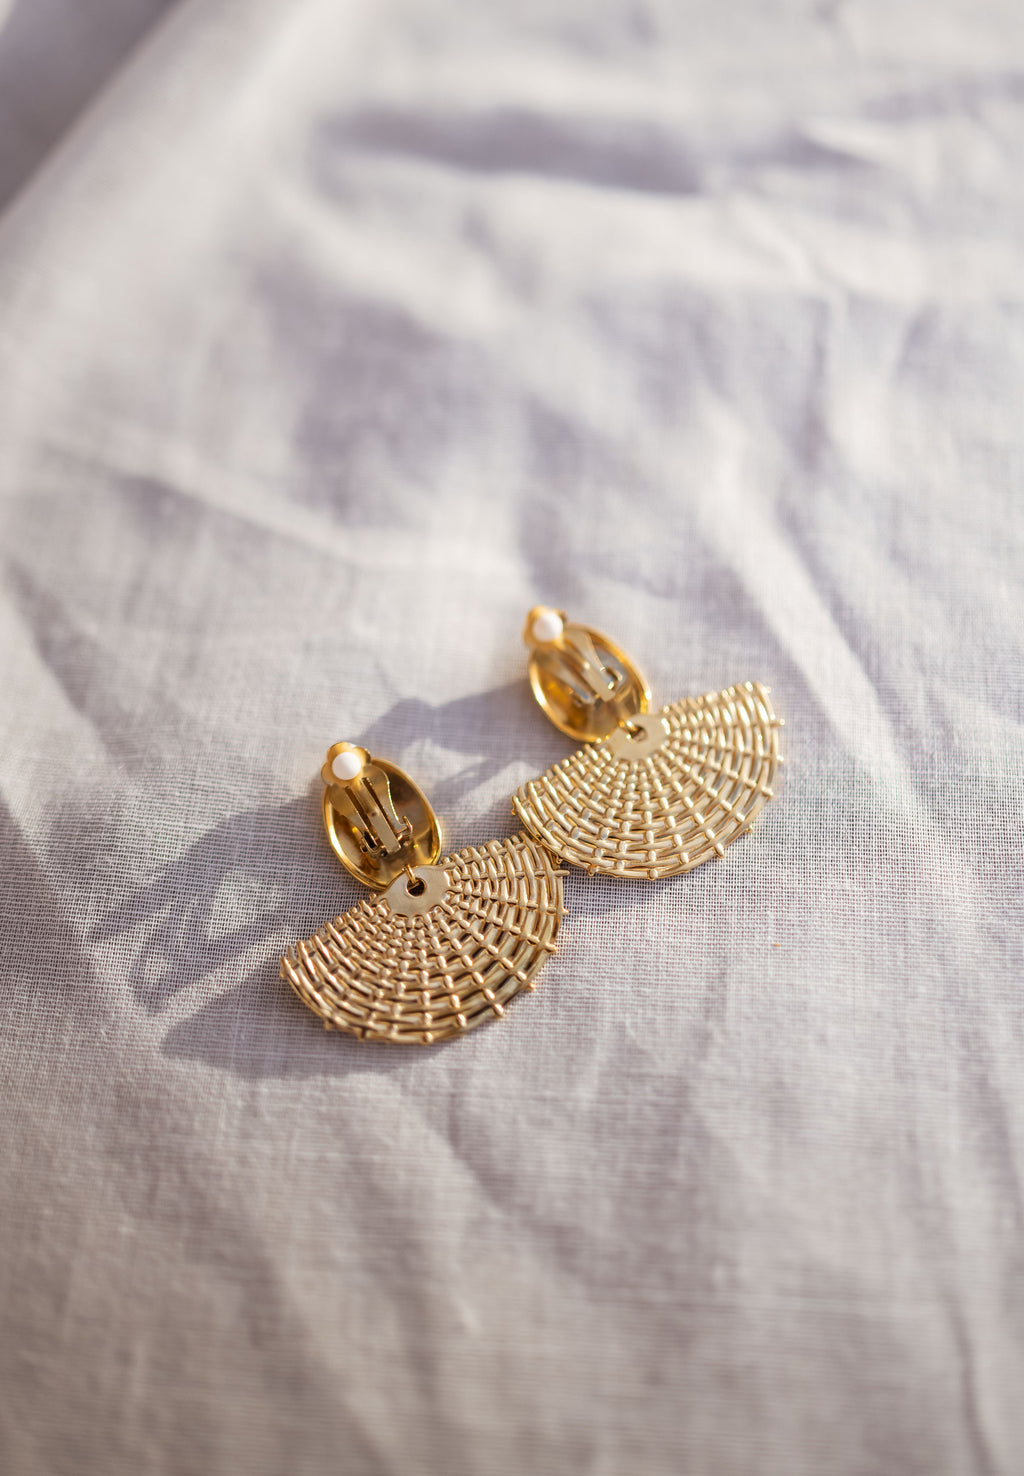 Elvis earrings - Golden